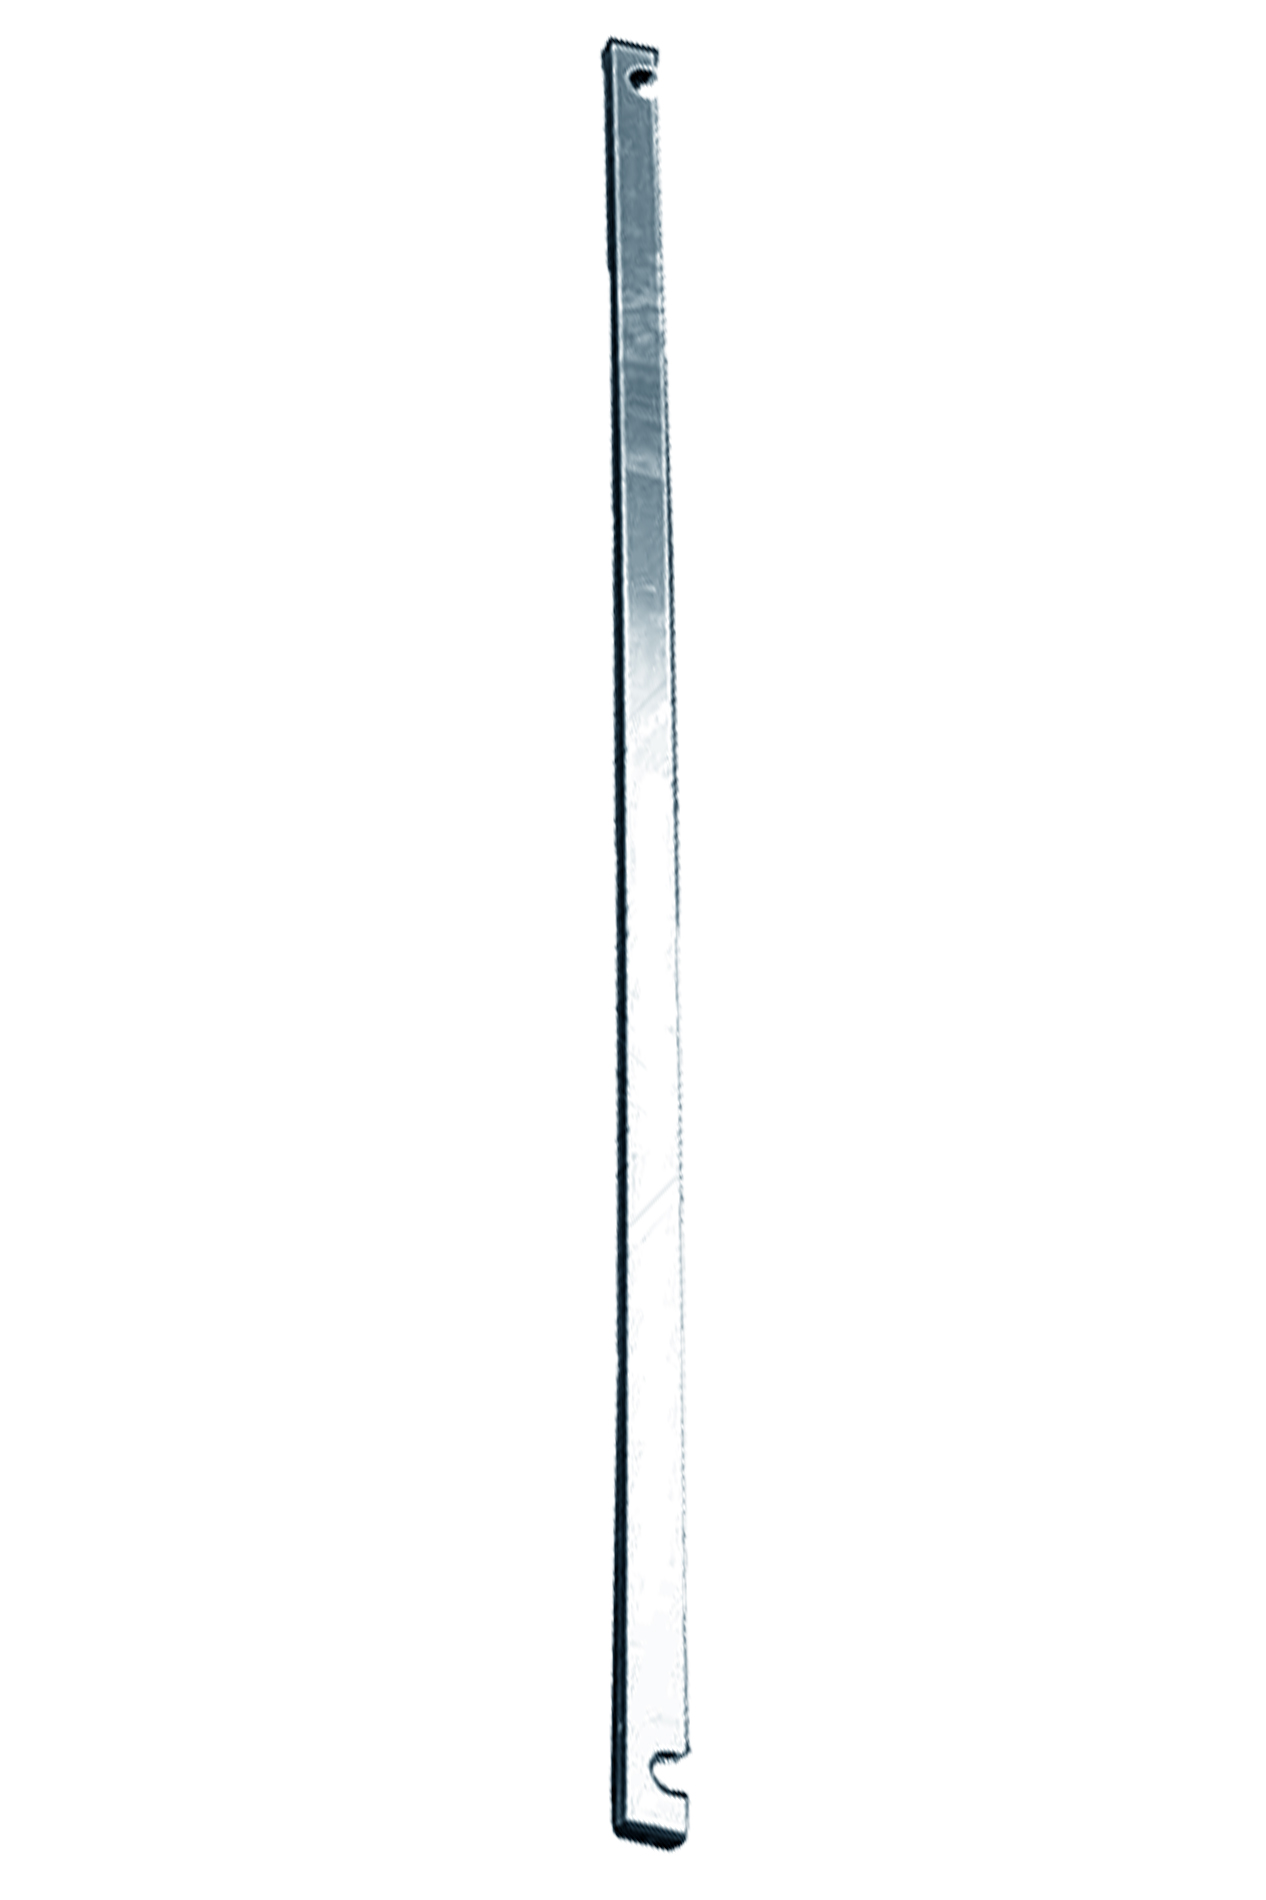 Дополнительное изображение STABILO 100-3 Передвижные подмости, рабочая высота 11,3 м, размер площадки (3.0x0.75 м)